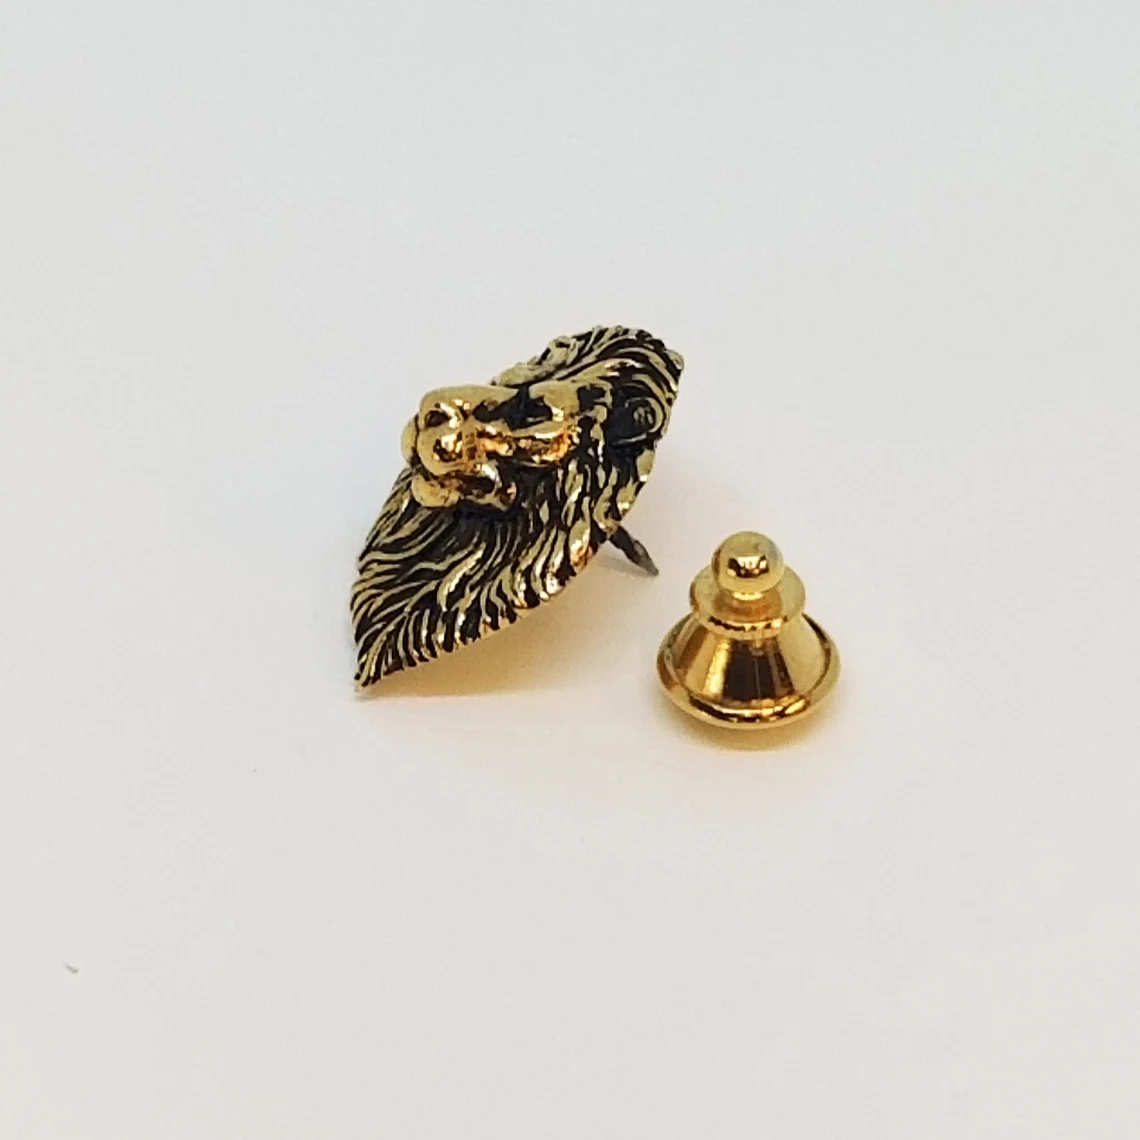 14ct gold bull bear tie pin at Susannah Lovis Jewellers